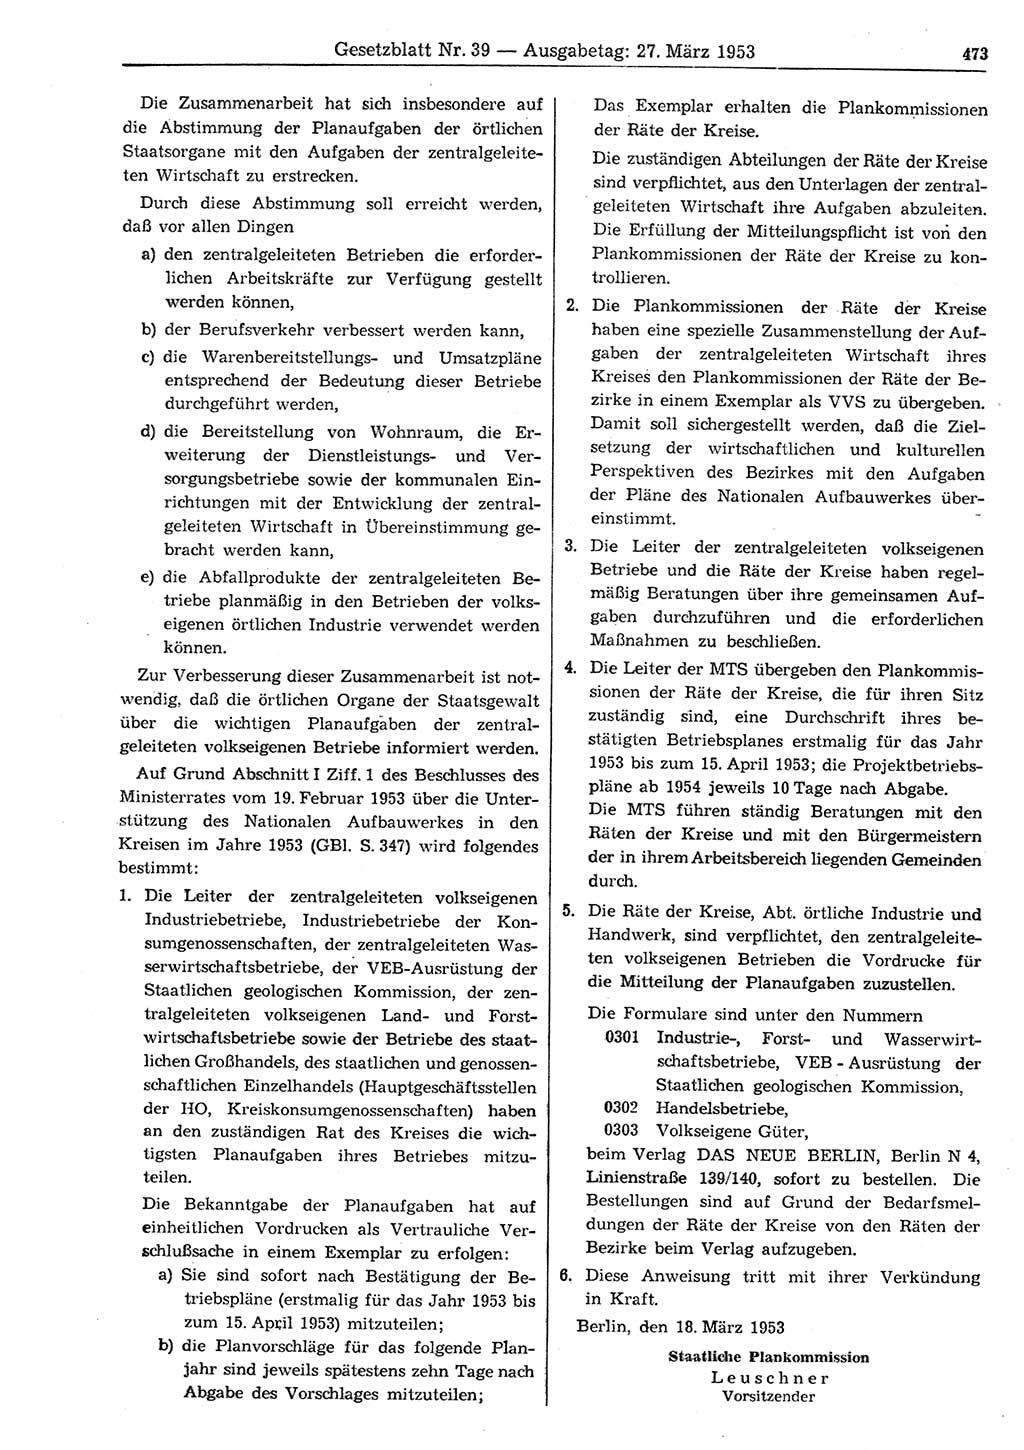 Gesetzblatt (GBl.) der Deutschen Demokratischen Republik (DDR) 1953, Seite 473 (GBl. DDR 1953, S. 473)